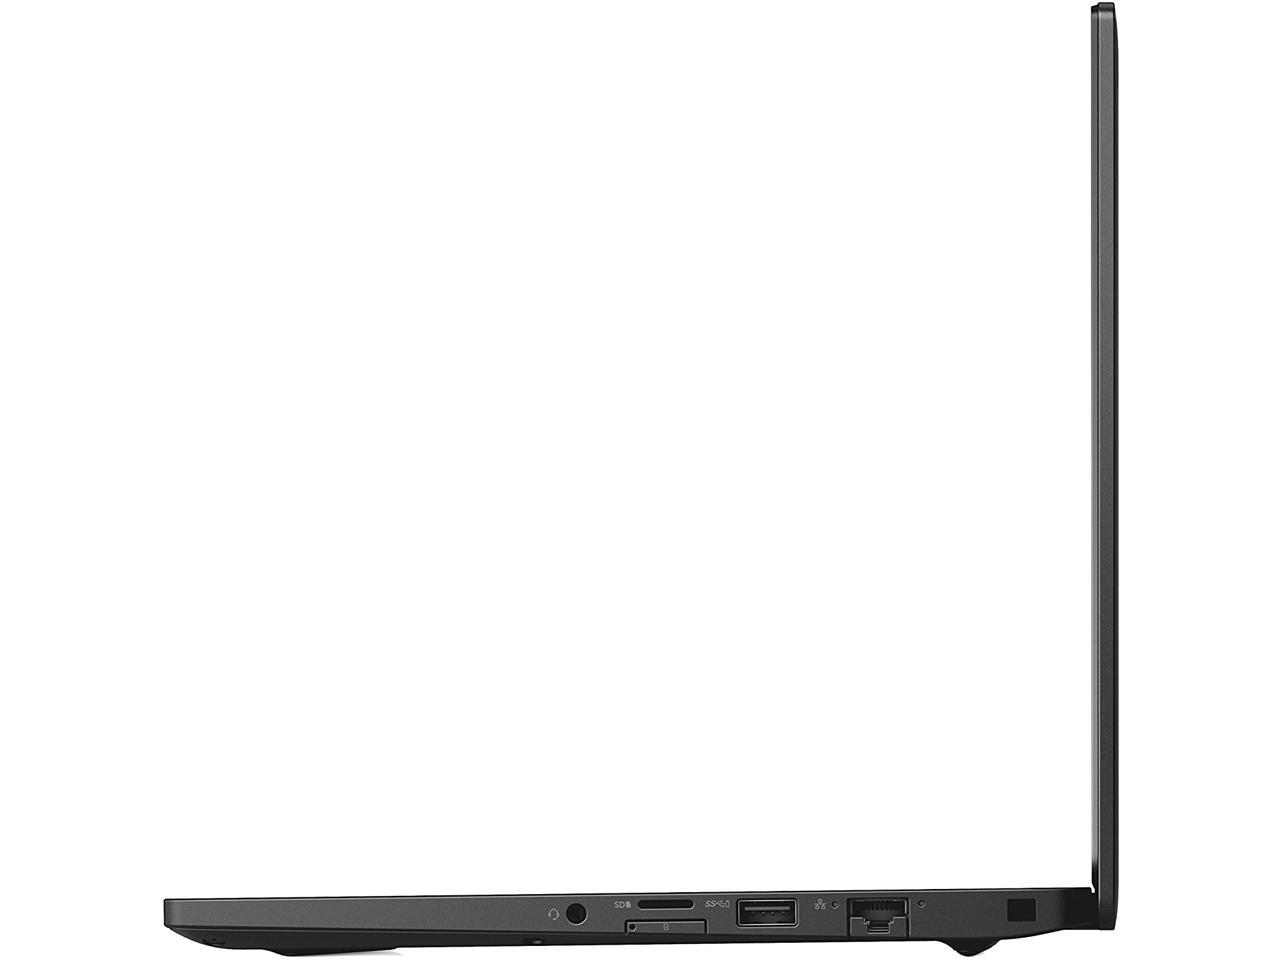 Dell Latitude 7390 13.3 inch 1920x1080 Full HD Touchscreen Laptop PC, Intel Quad Core i7-8650U 1.9GHz, 8GB Ram, 256GB SSD, Win 10 Pro Grade A